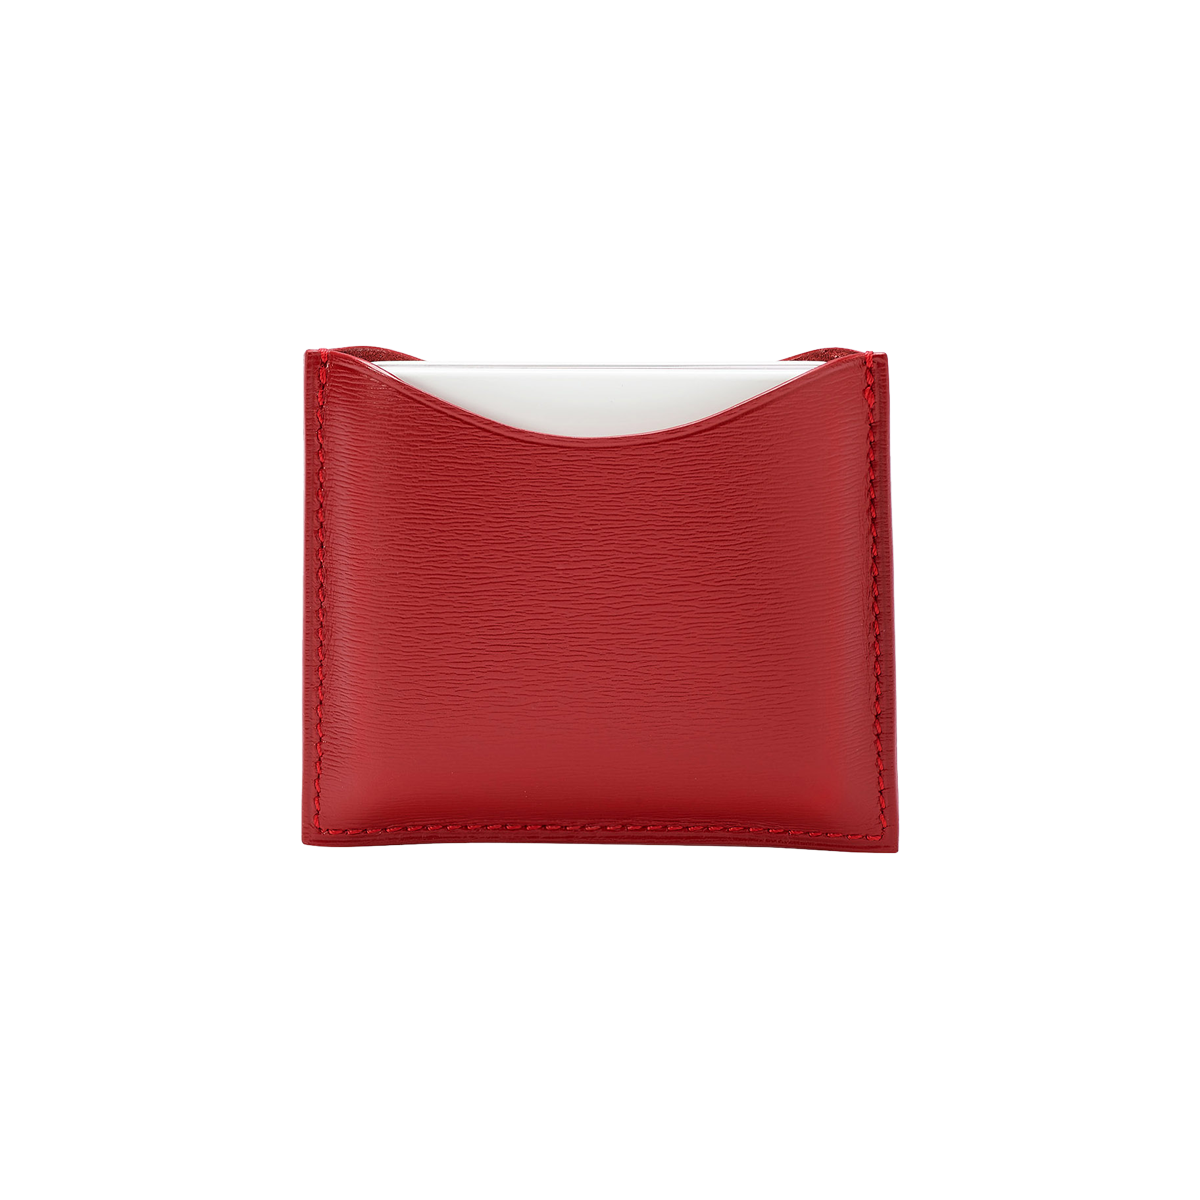 la bouche rouge, Paris - Refillable Red Fine Leather Compact Case